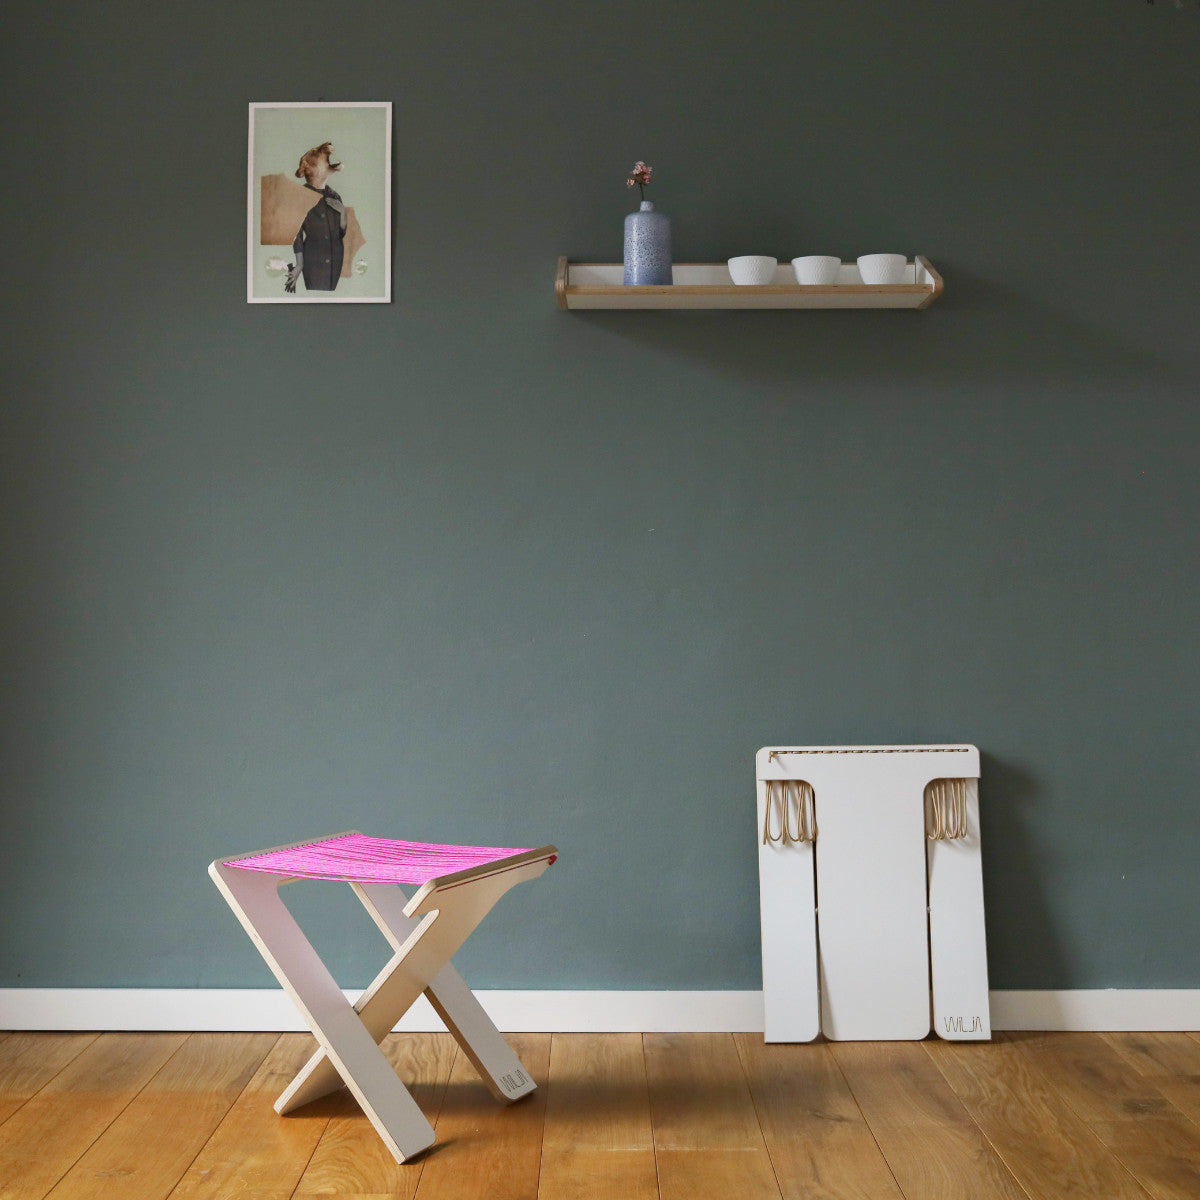 WILJA Klapphocker Karl faltbar aus Holz mit Seil in pink im Zimmer mobiles Sitzmöbel im Licht